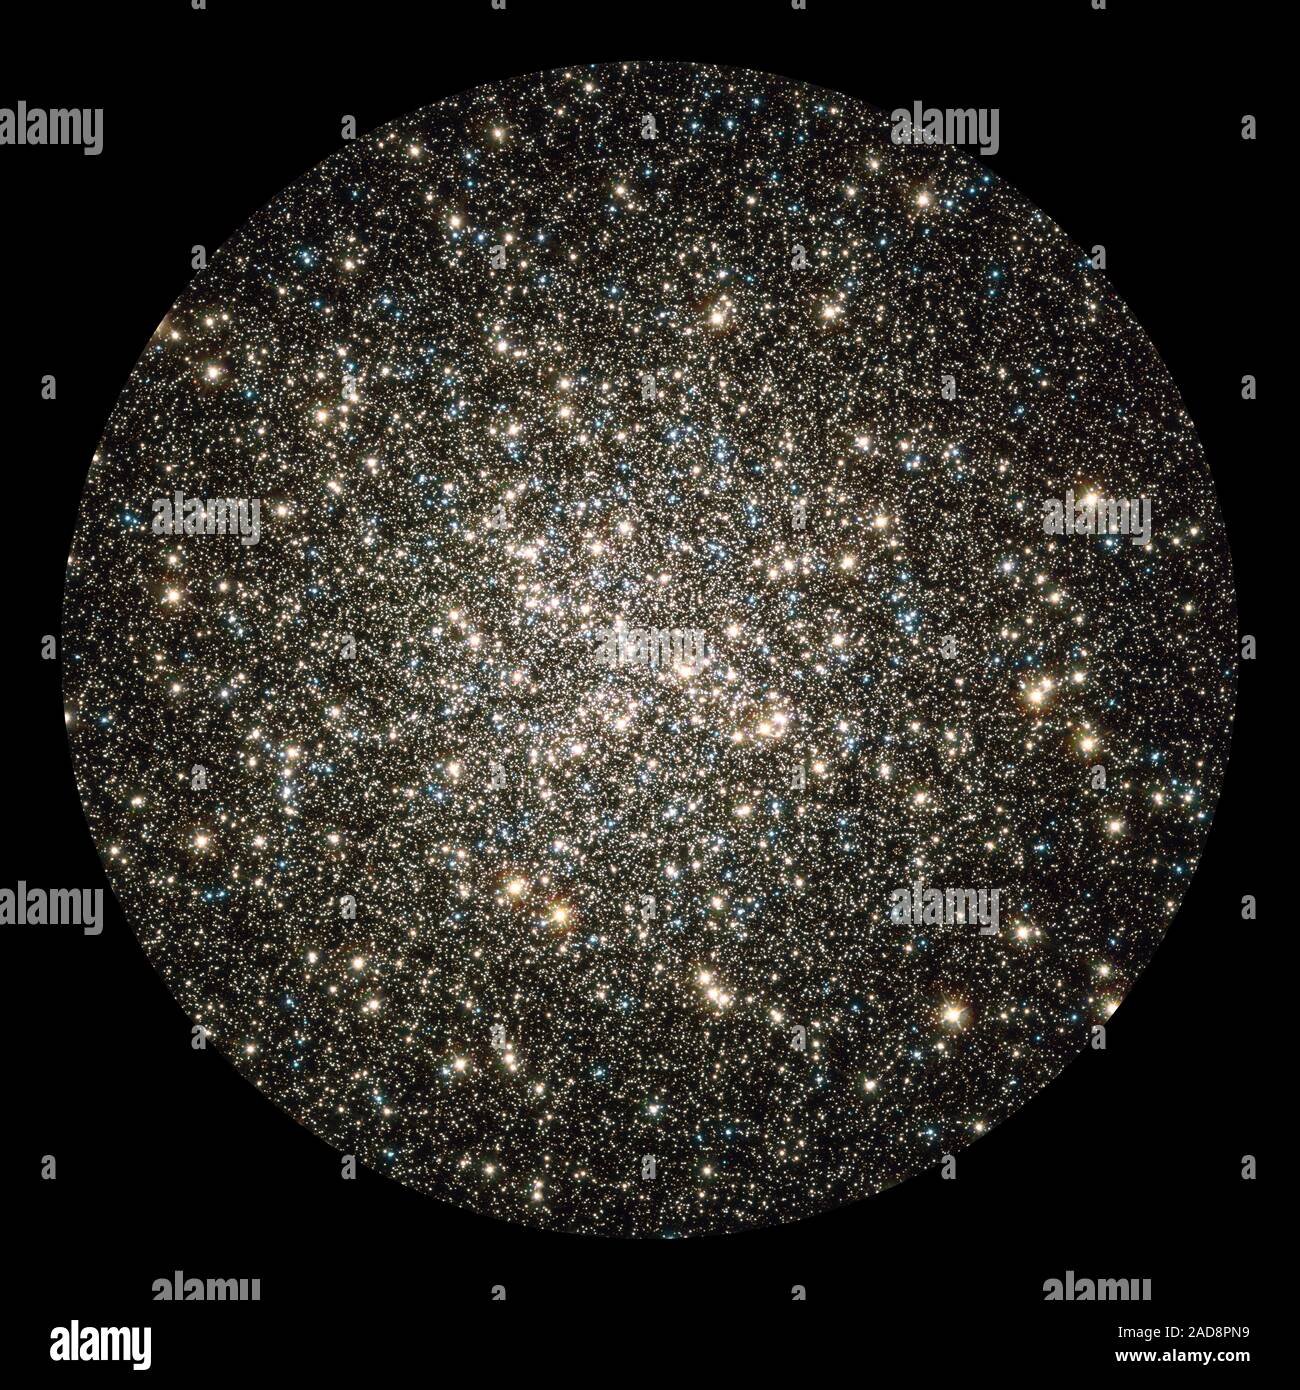 Come un vortice di lucenti scaglie scintillanti in un Snow Globe, Hubble catture un istantaneo scorcio di molte centinaia di migliaia di stelle che si muova in ammassi globulari M13, uno dei più brillanti e meglio noti ammassi globulari nella northern sky. Questo scintillante metropoli di stelle è facilmente reperibile nel cielo invernale nella costellazione di Ercole e può anche essere intravisto ad occhio nudo sotto cieli bui. M13 è la casa per oltre 100.000 stelle e situato ad una distanza di 25.000 anni-luce. Queste stelle sono imballati così strettamente insieme in una sfera di circa 150 anni-luce attraverso, che th Foto Stock